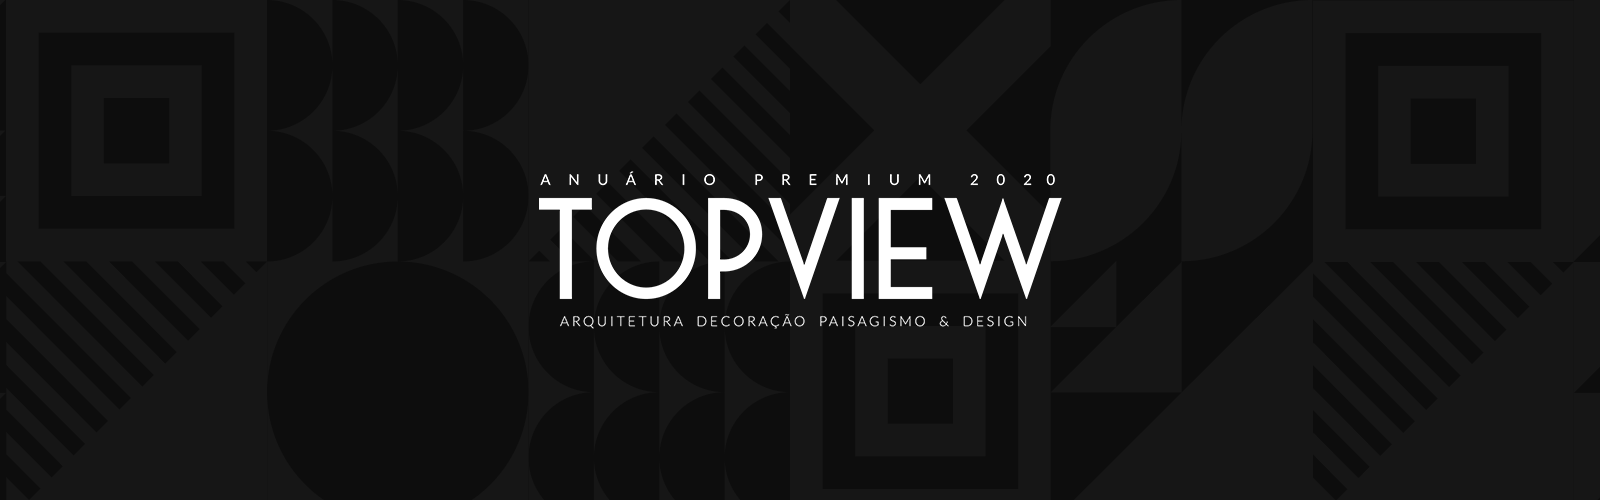 Anuário de Arquitetura TOPVIEW